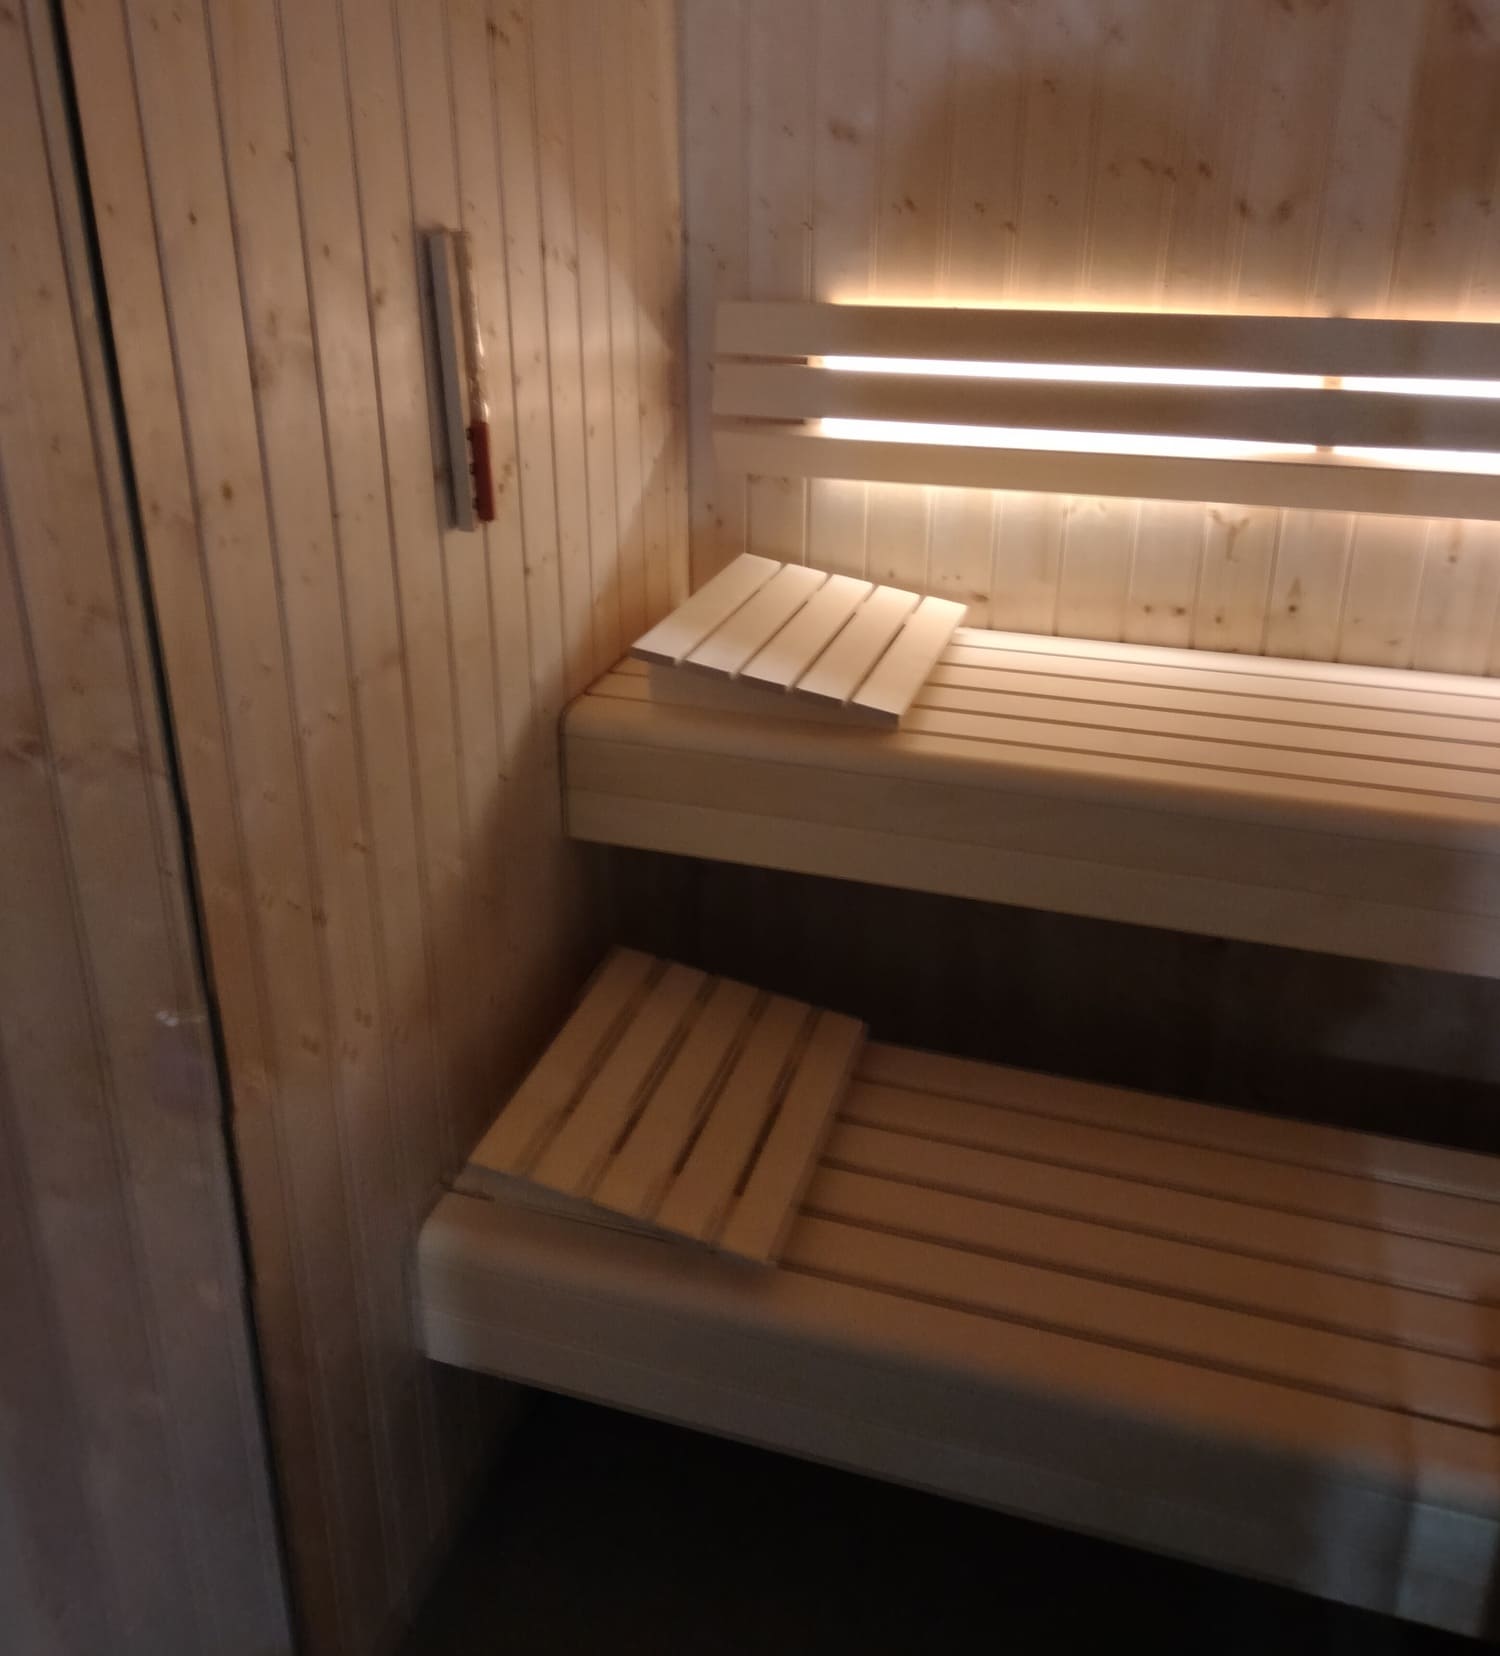 Cuscini in legno e panche per sauna chiare